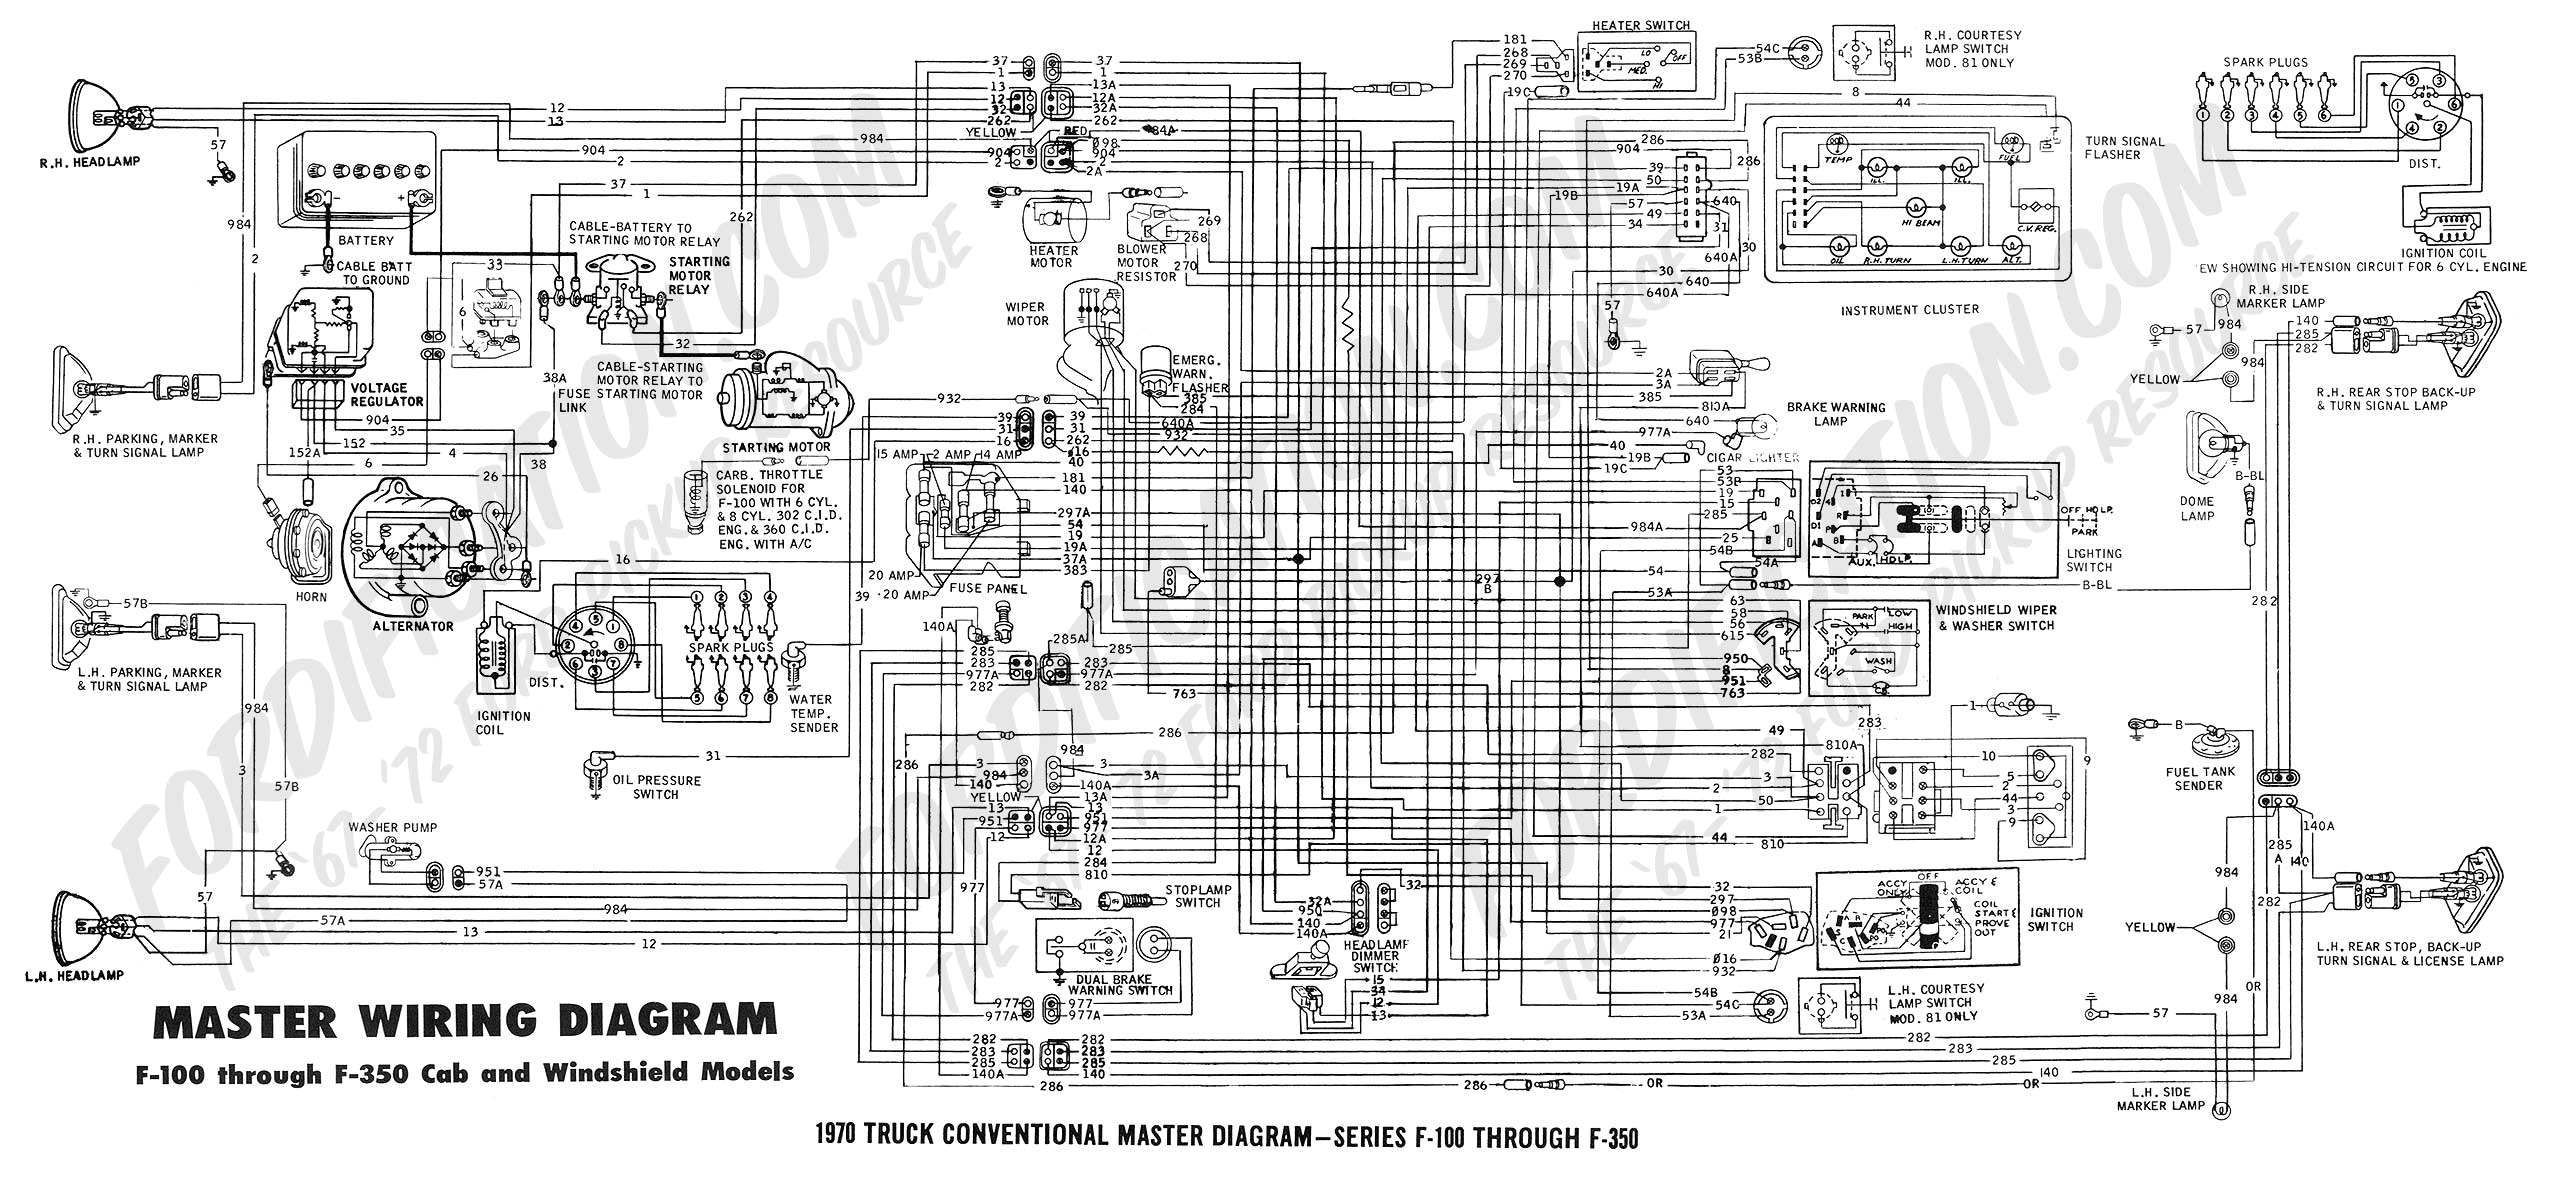 wiring diagram 70 master jpg